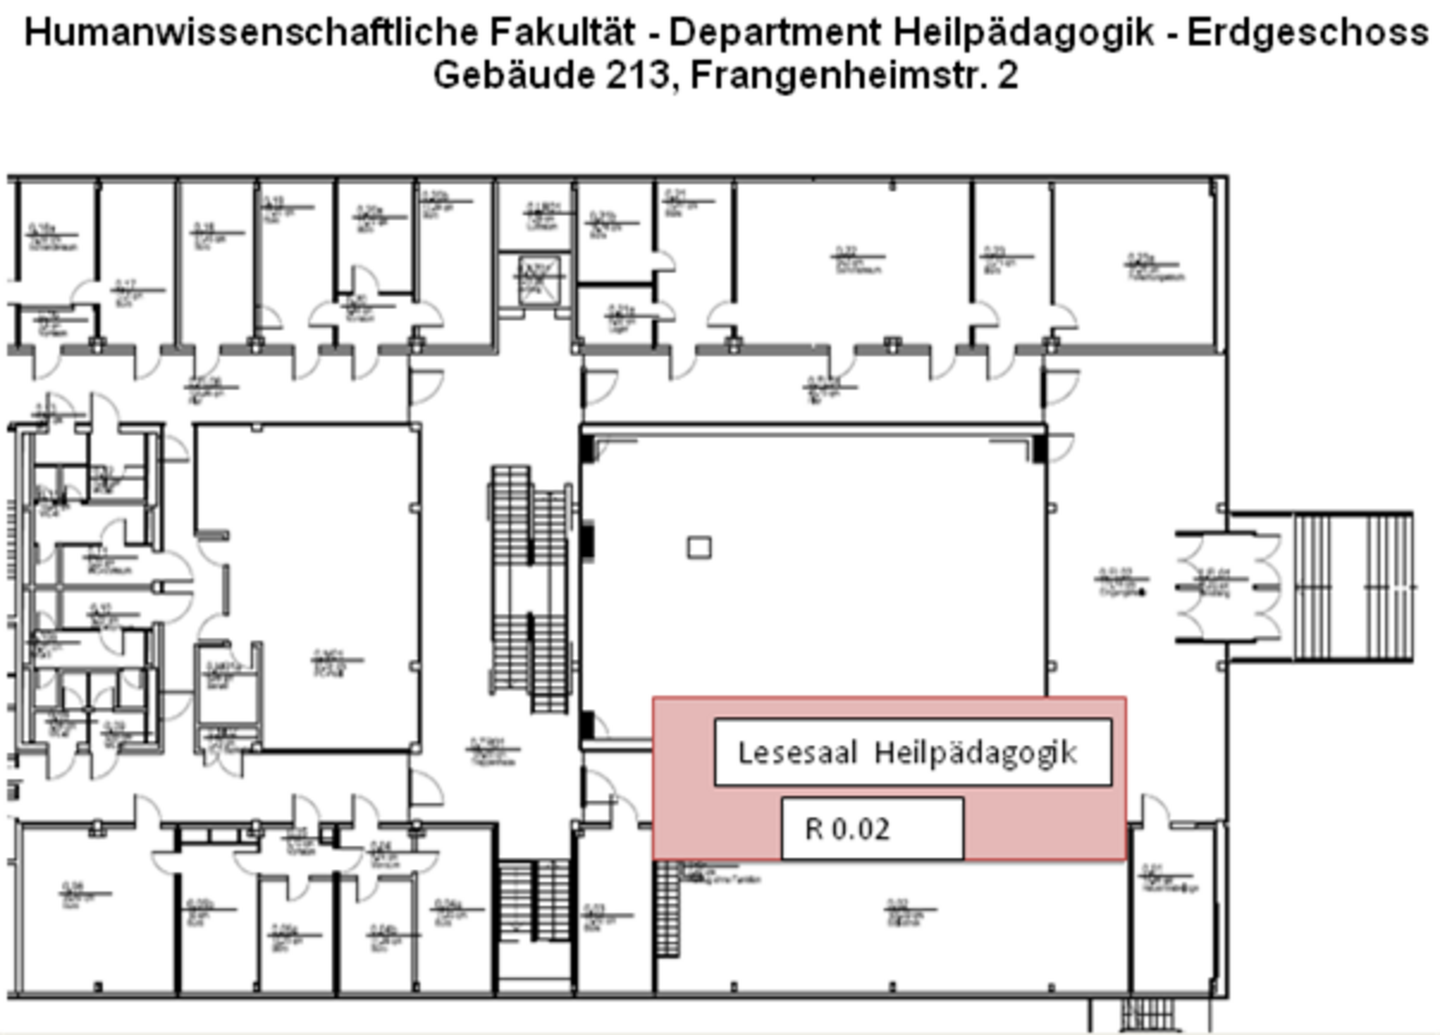 Lageplan der Humanwisschenschaftlichen Fakultät der Universität zu Köln, Department Heilpädagogik, Erdgeschoss.